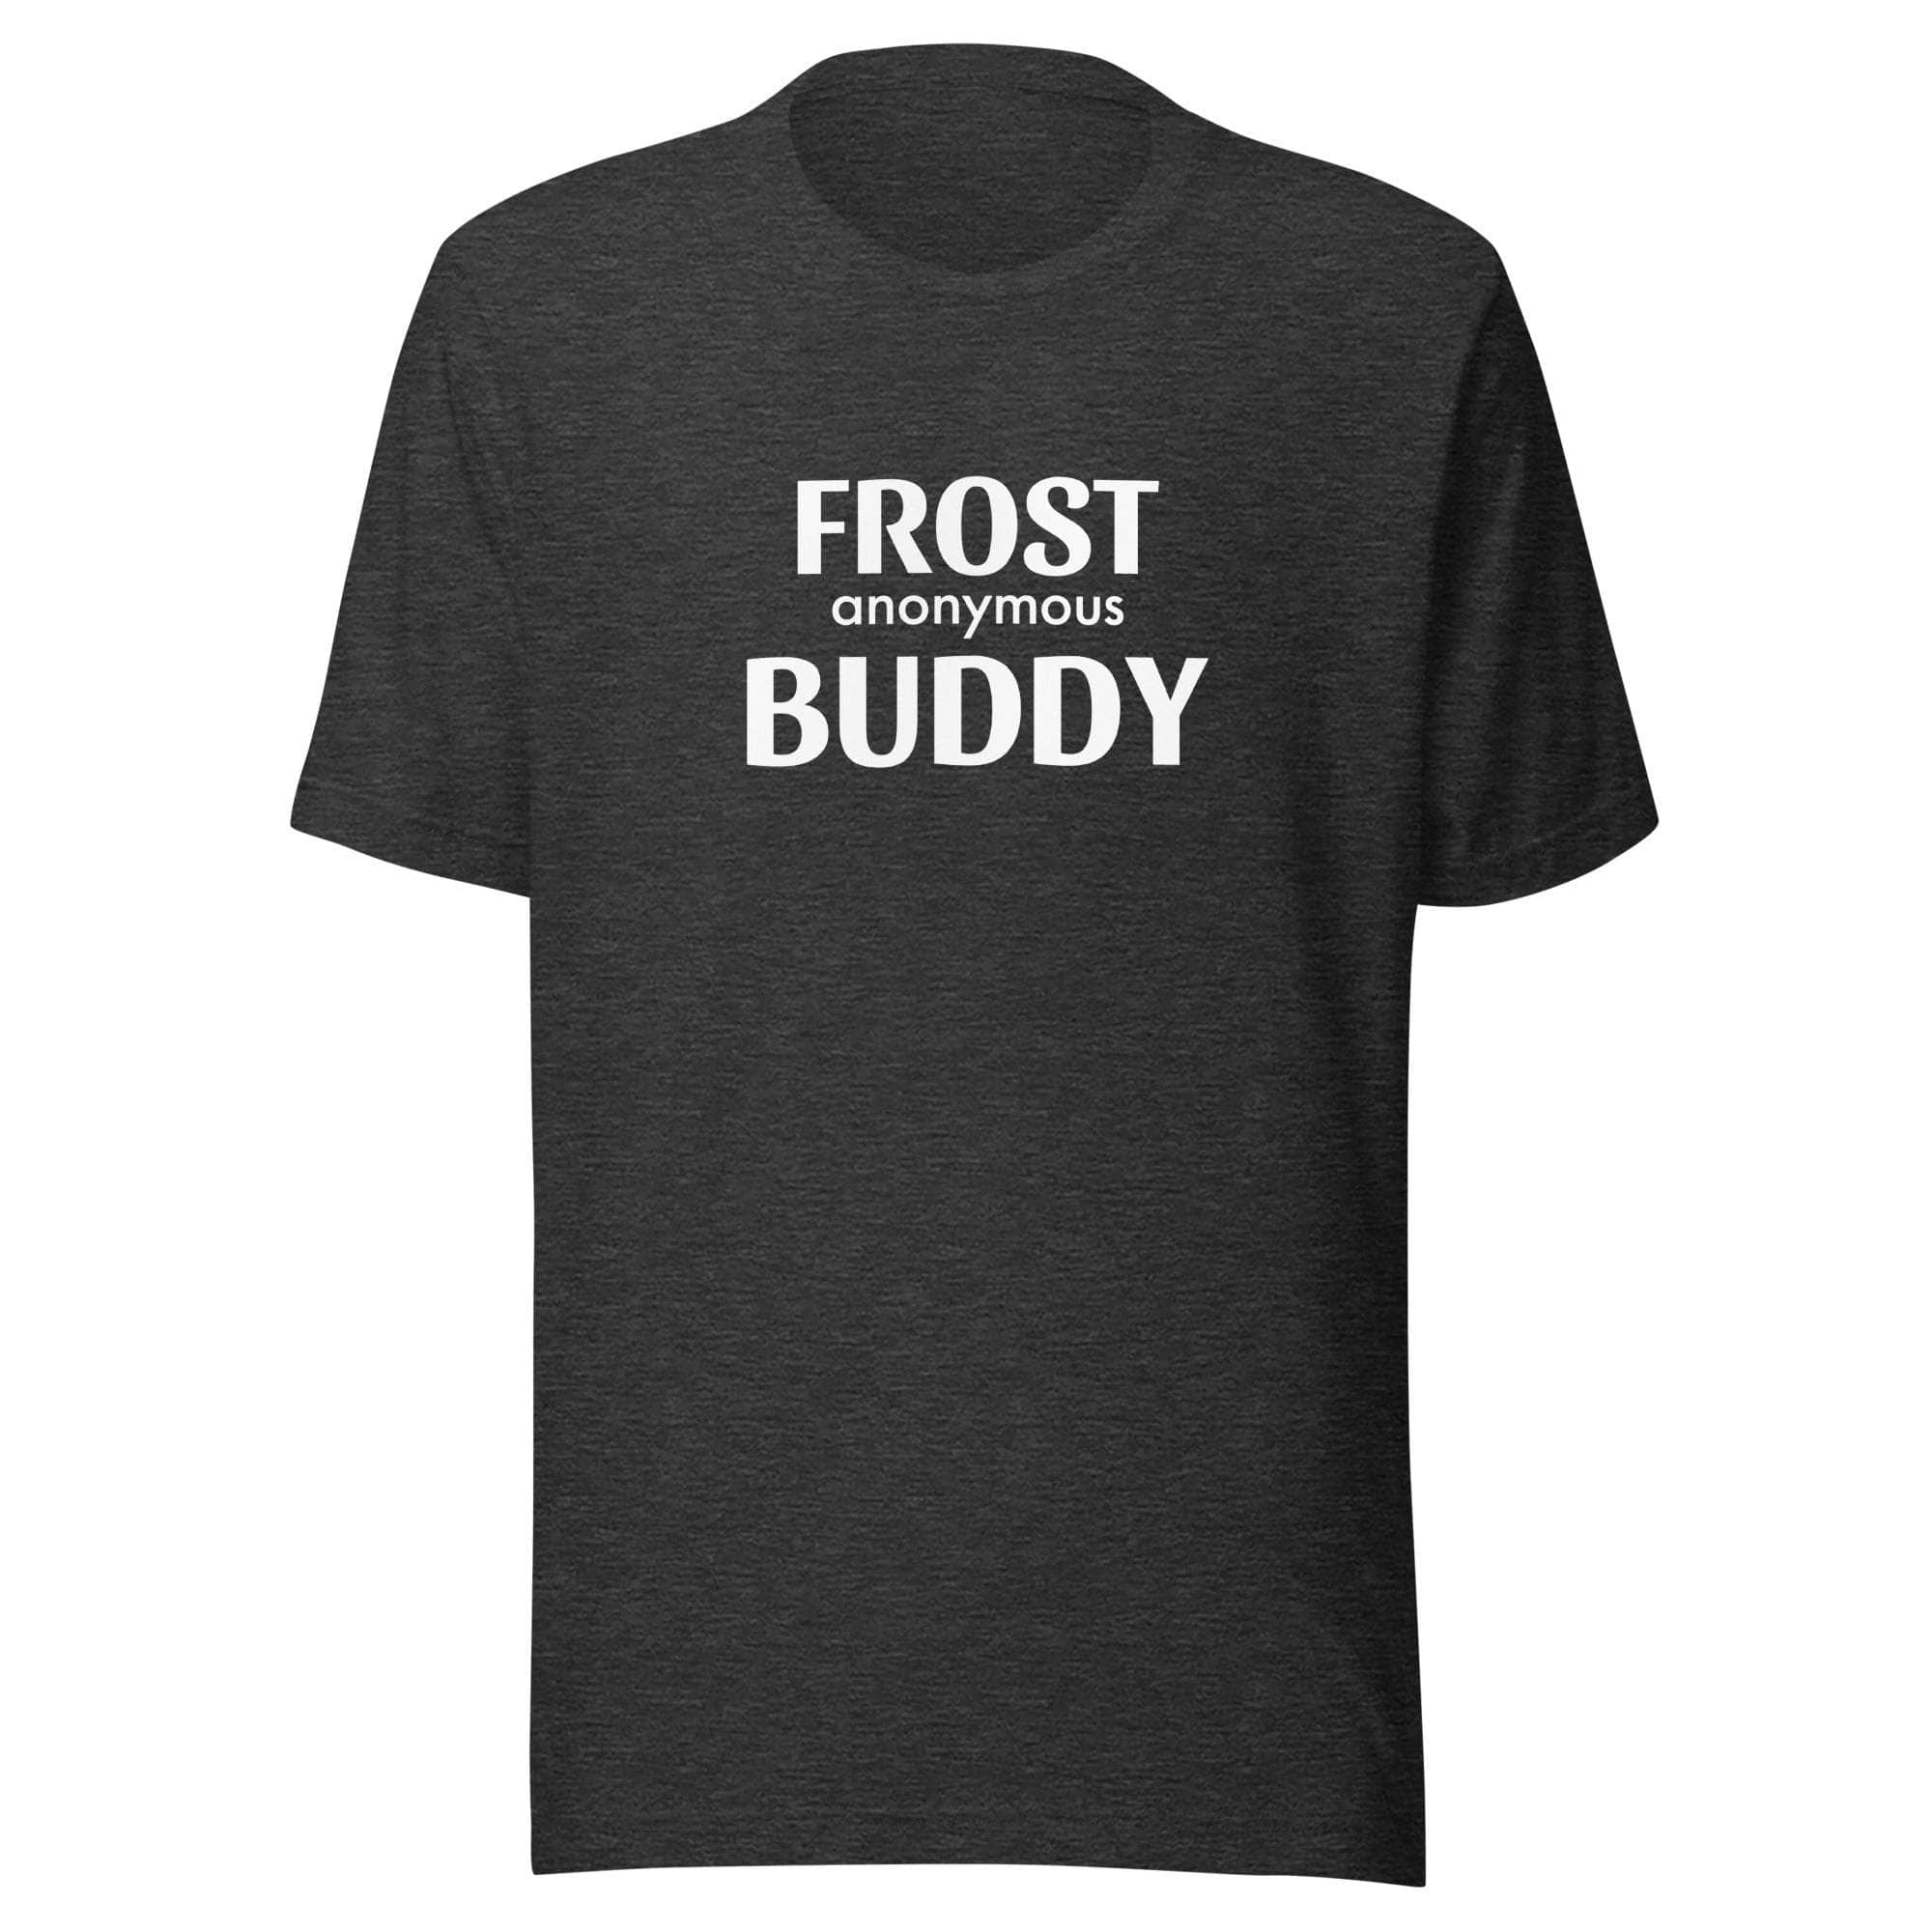 Frost Buddy  Dark Grey Heather / XS Frost Buddy Anonymous Unisex T-shirt